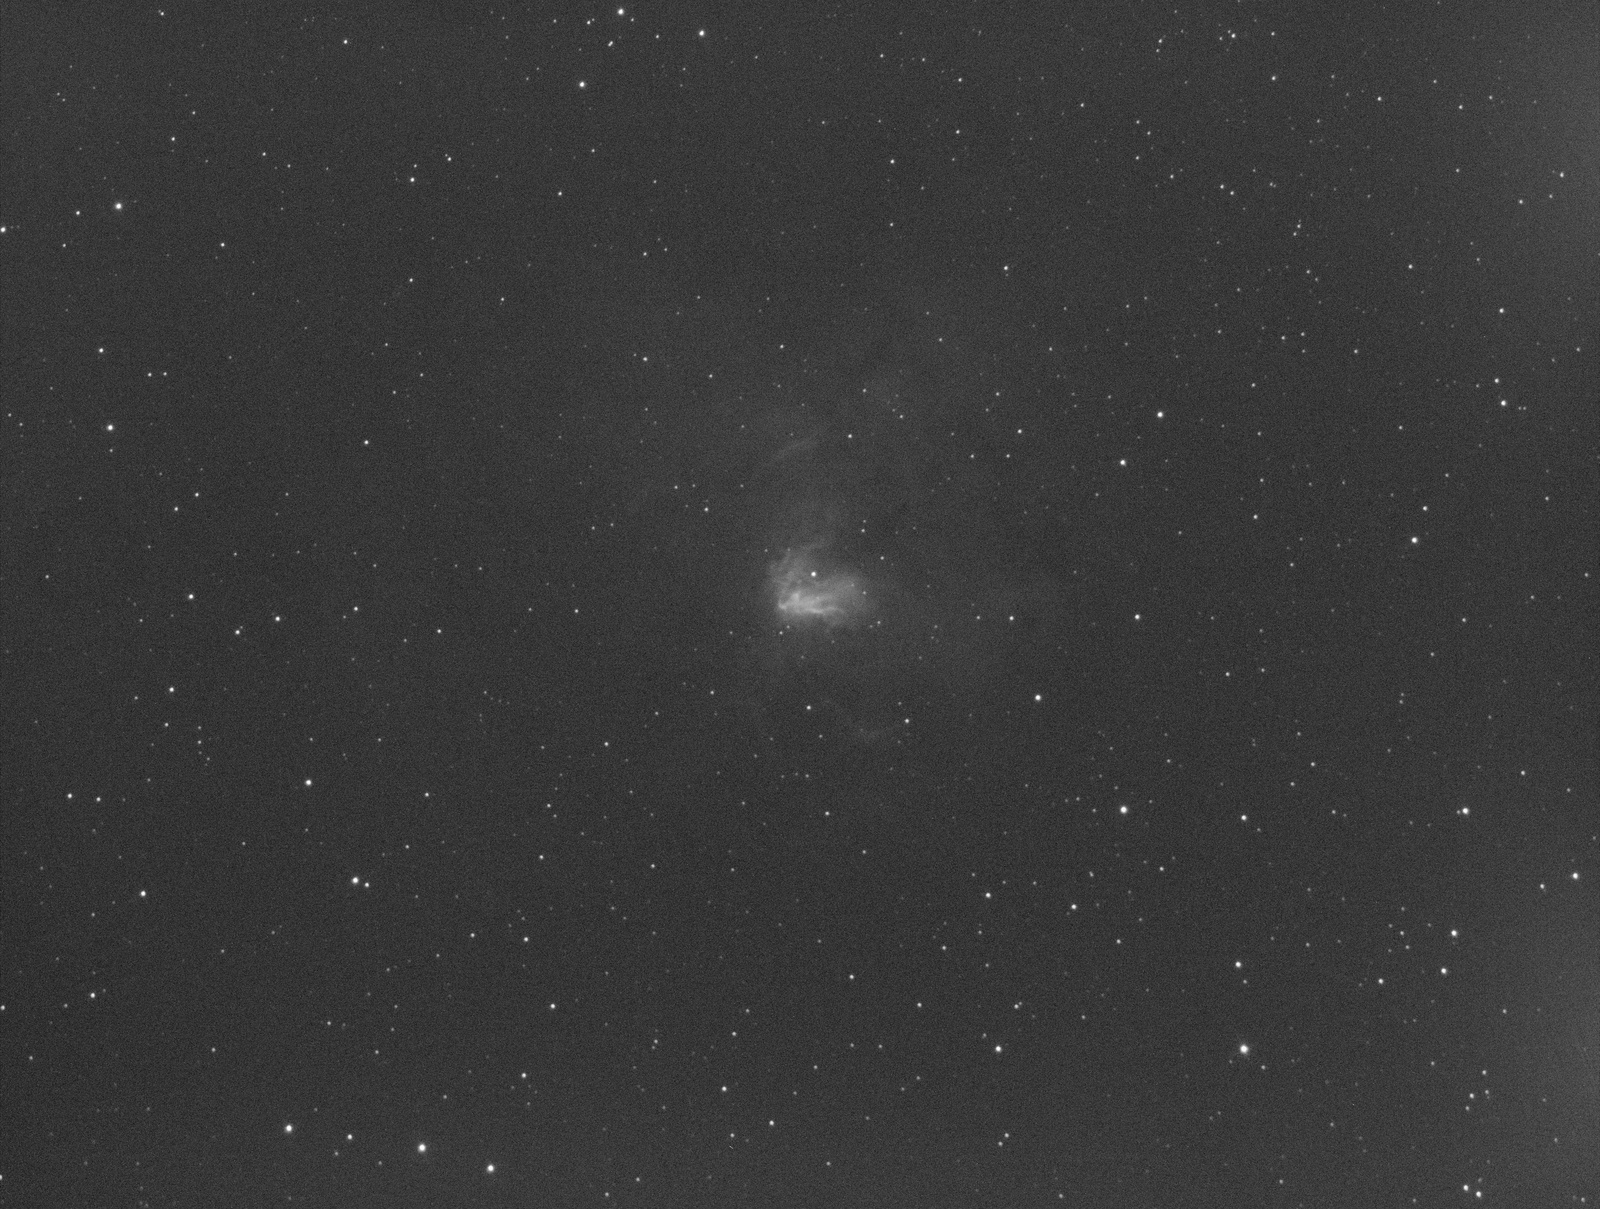 NGC1491_03-10-18_Ha-011300s-Scaled.jpg